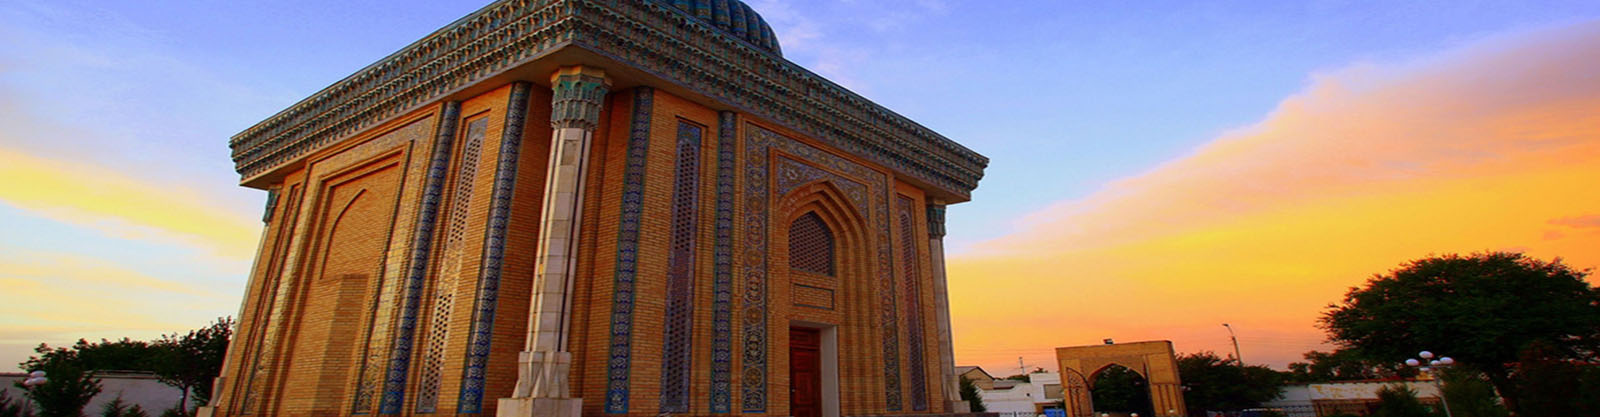 uzbekistan-special-interest-tours-content